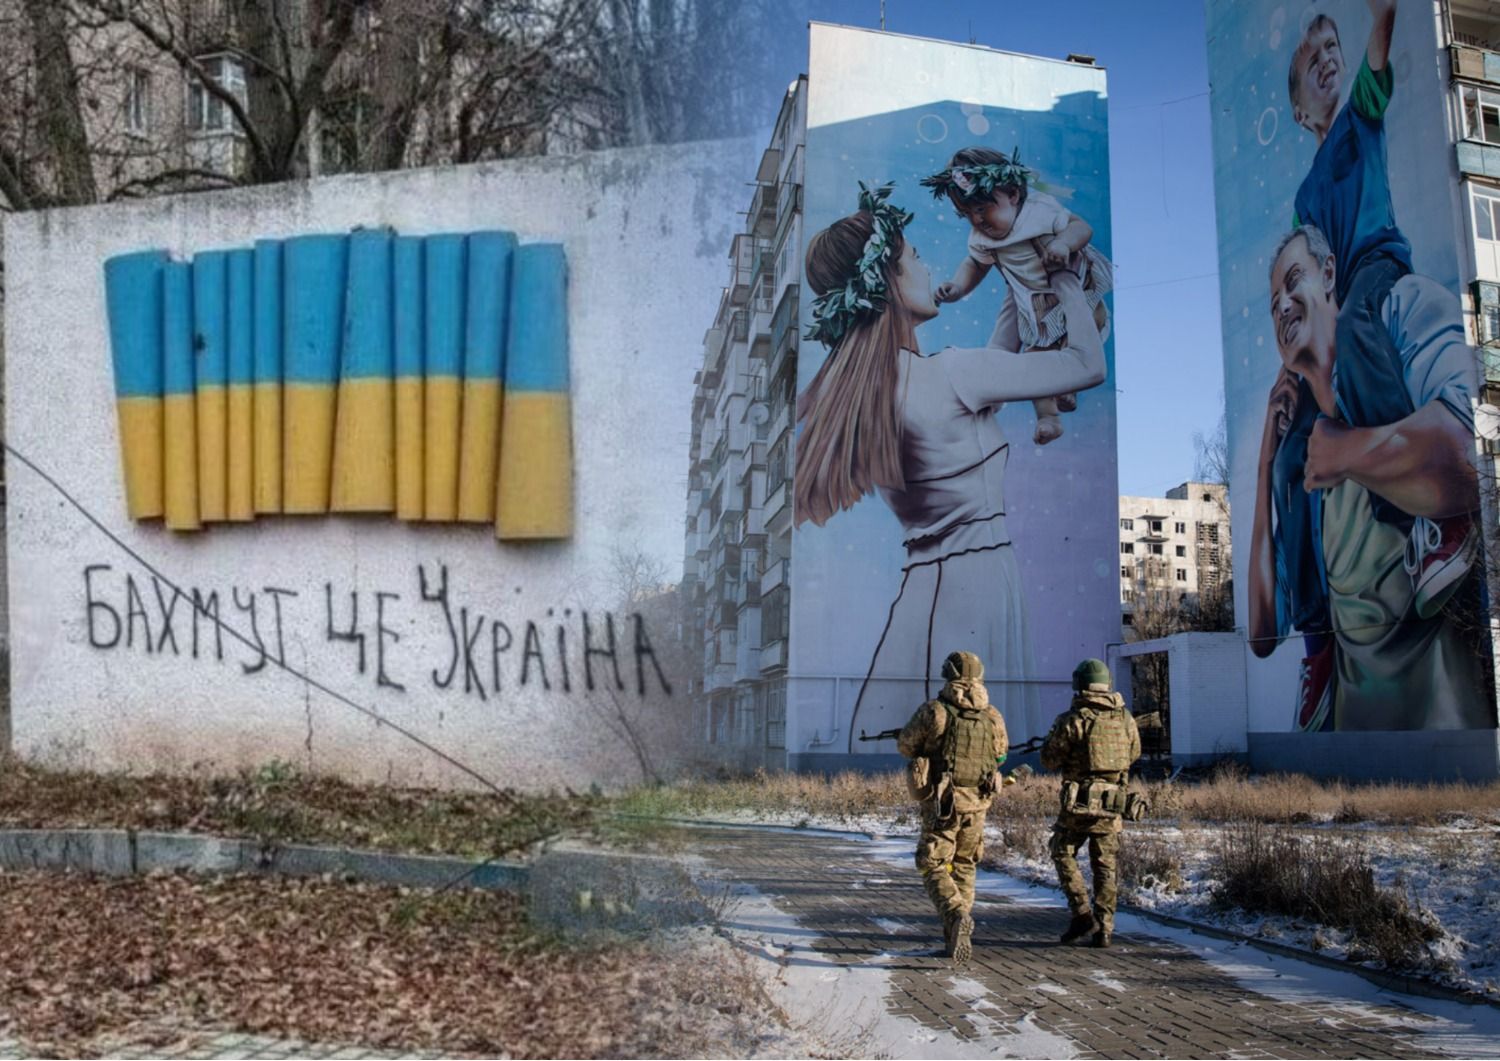 Бахмут — це Україна. Крапка.